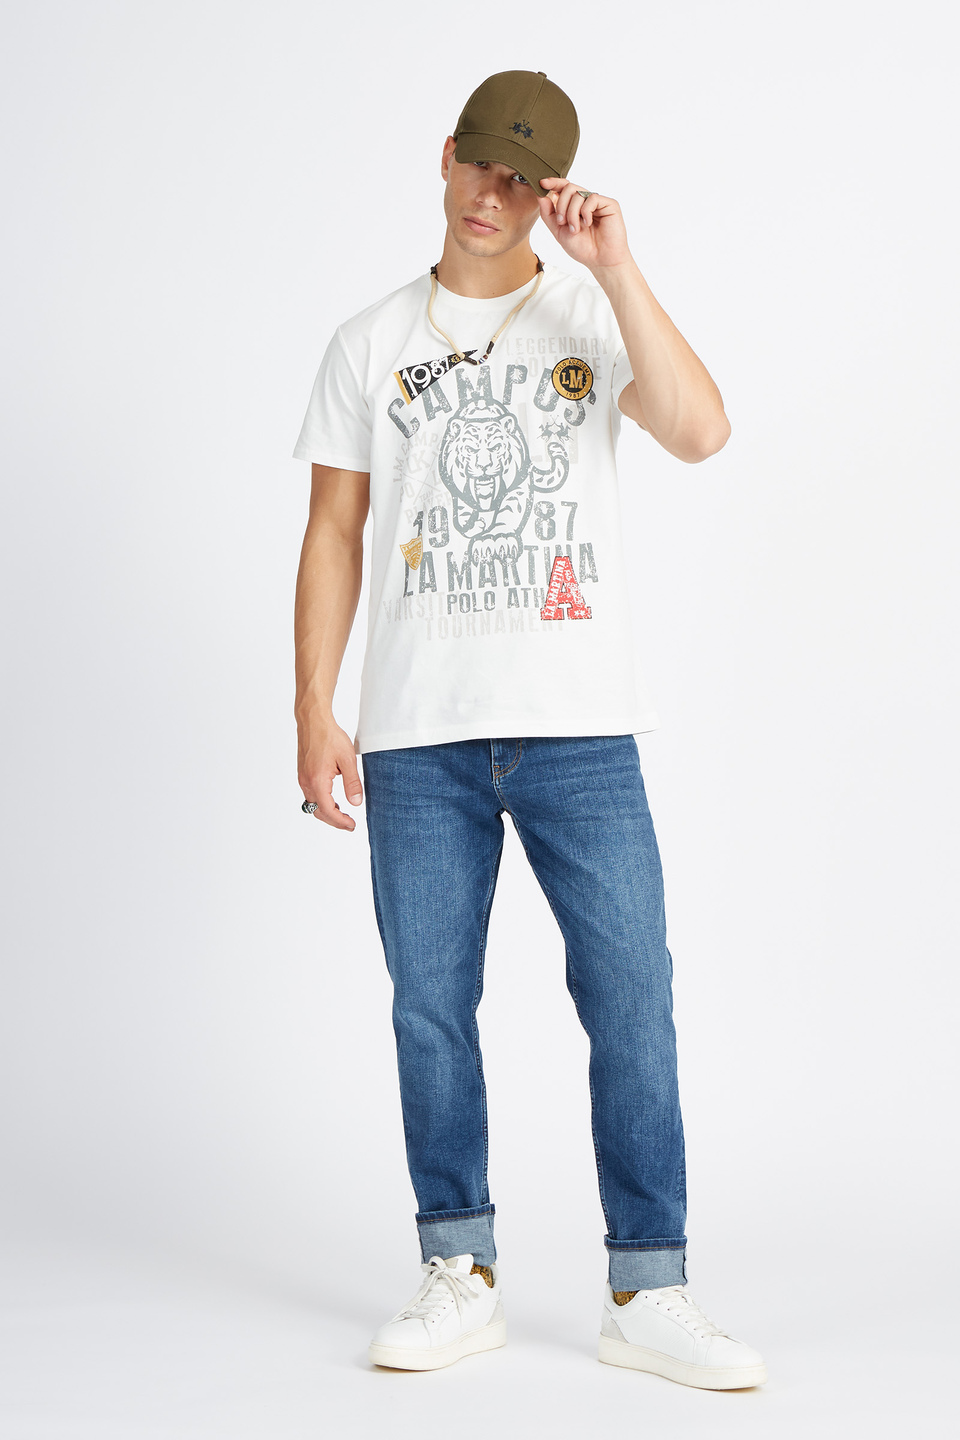 T-shirt à manches courtes Polo Academy pour hommes de couleur unie avec grand logo et lettrage - Verdell | La Martina - Official Online Shop